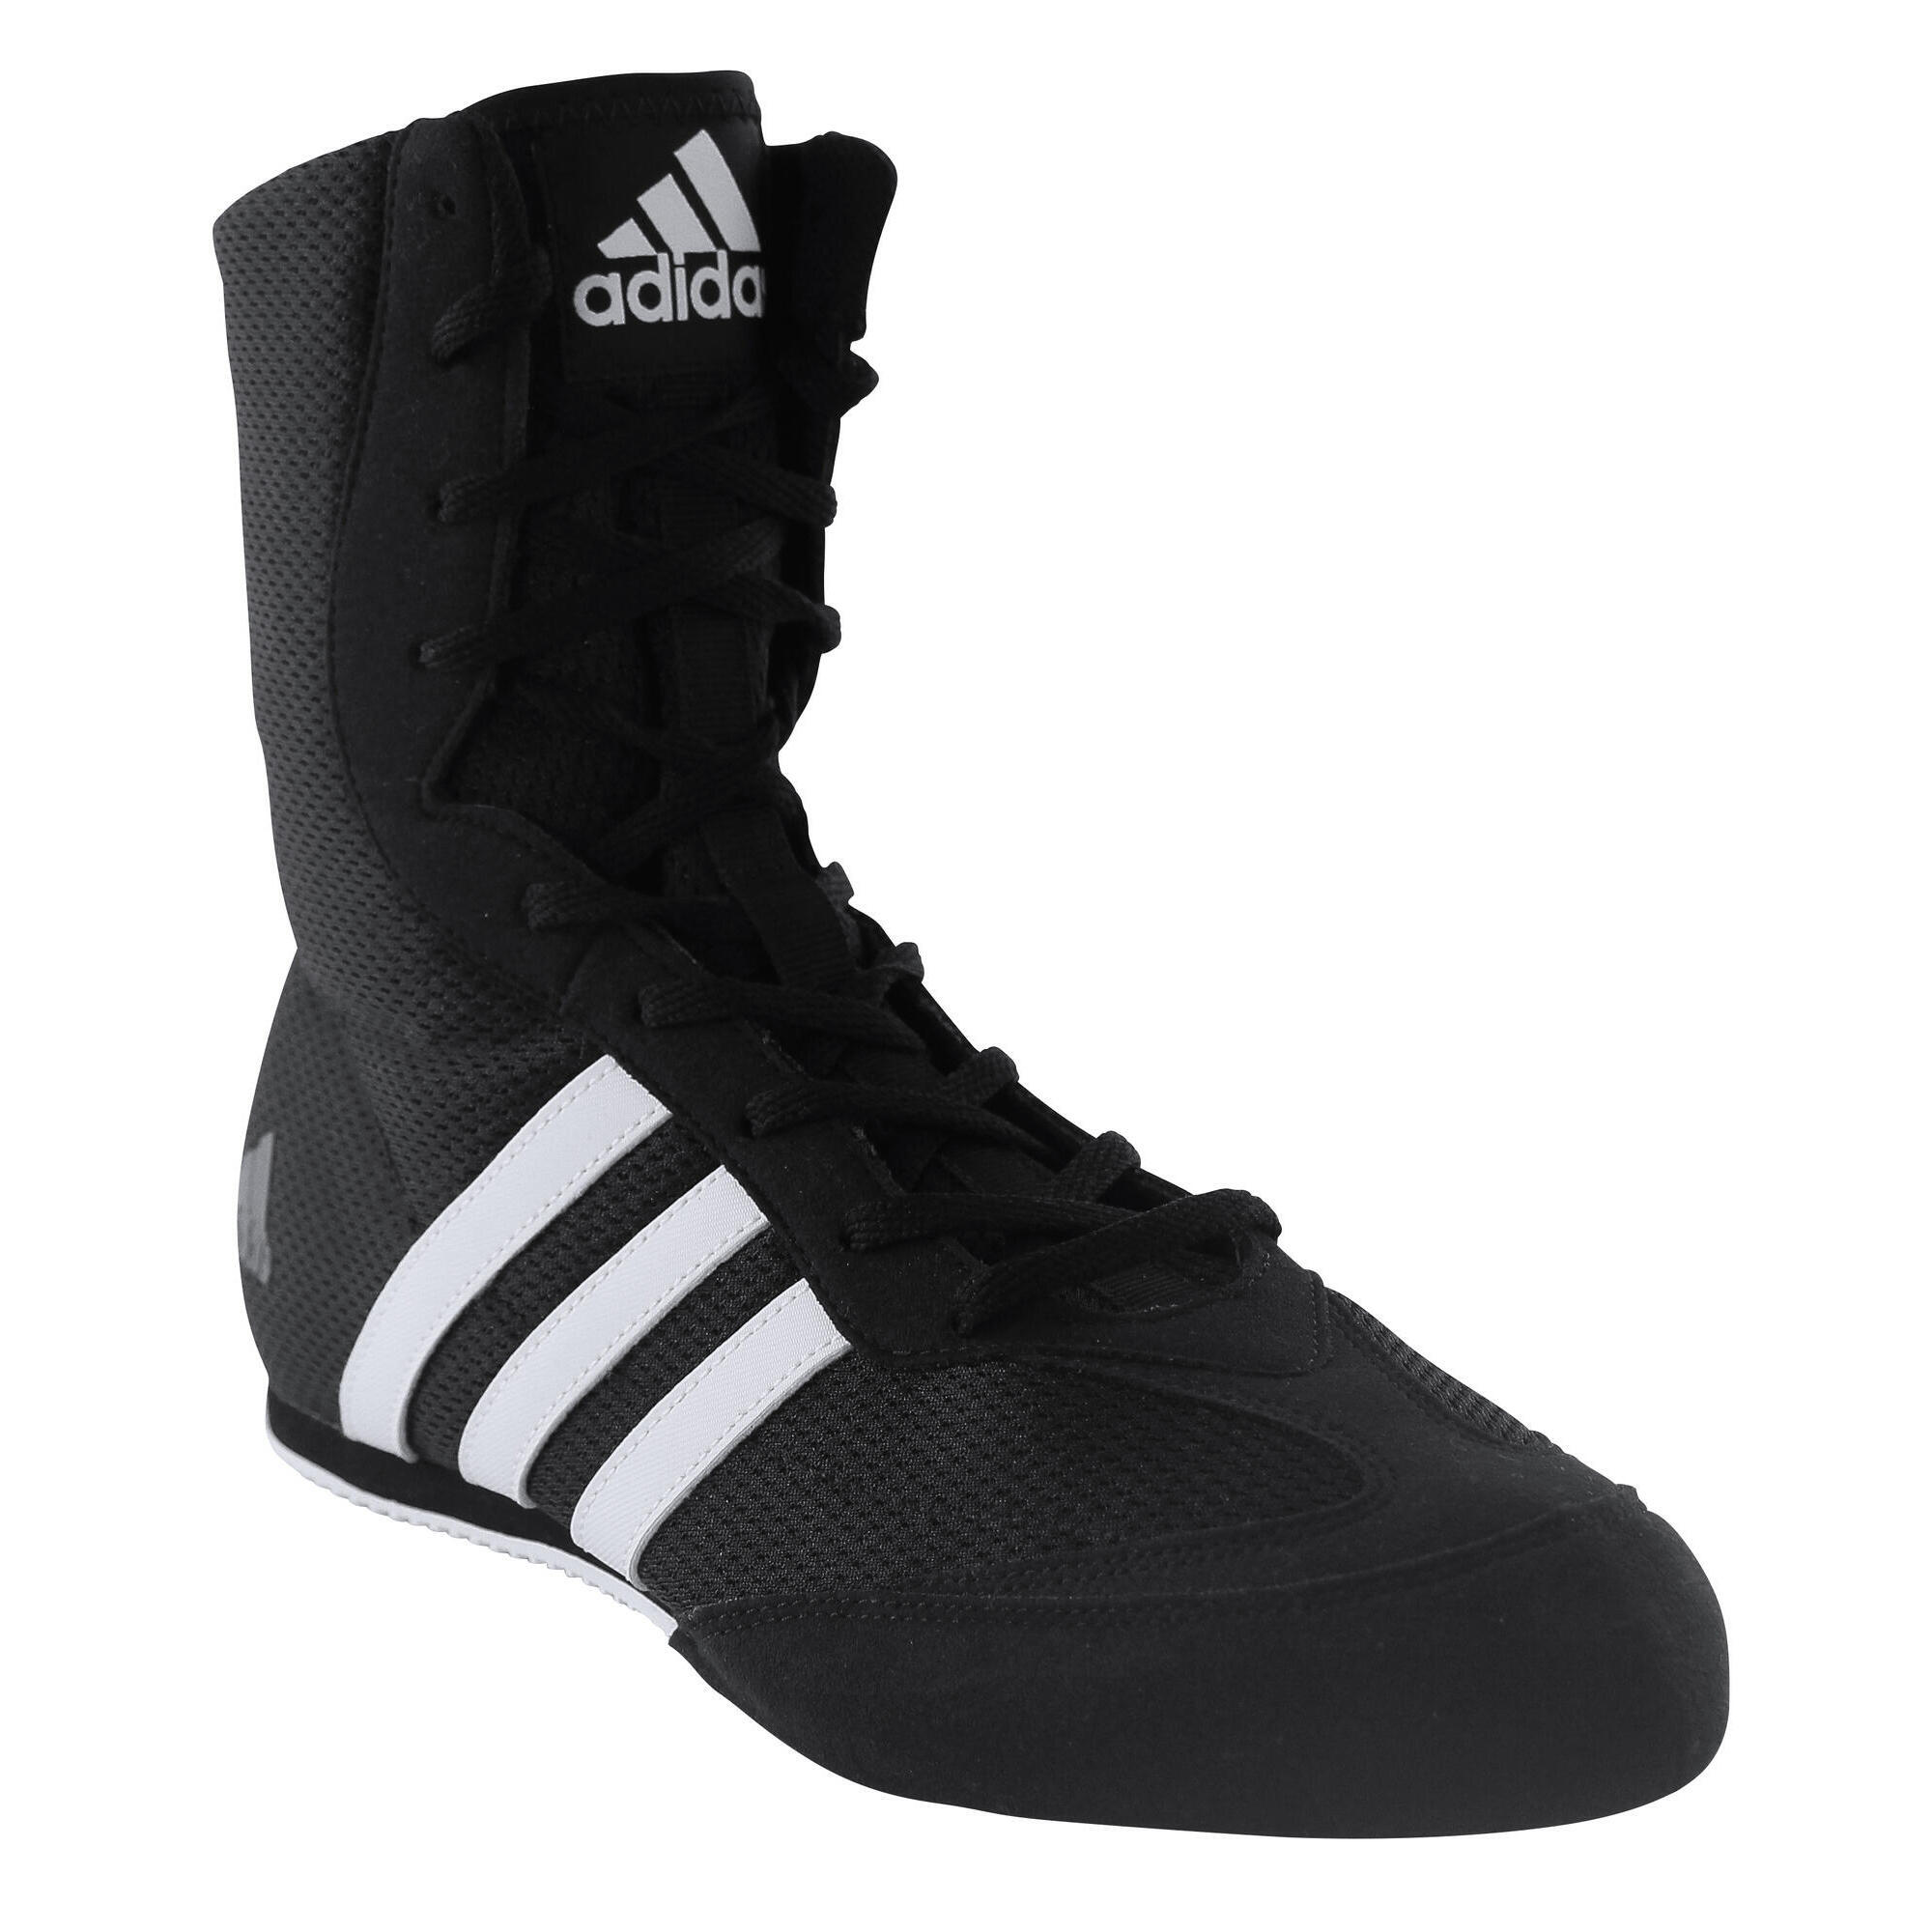 adidas boxing shoes uk